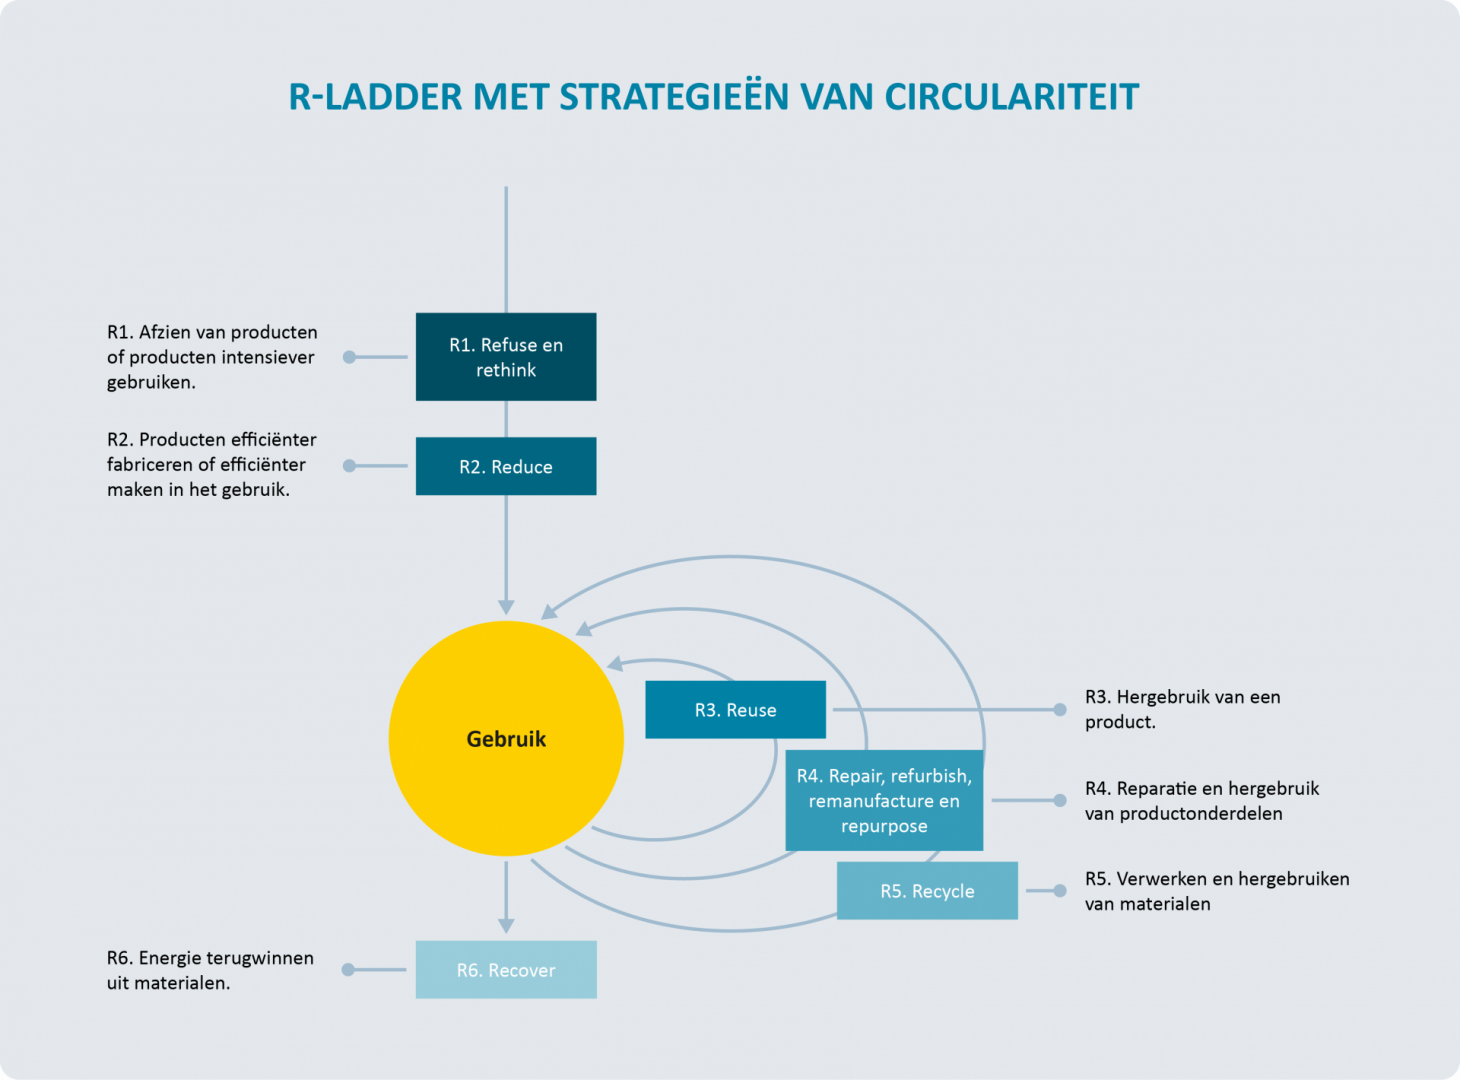 R-ladder met strategieën van circulariteit